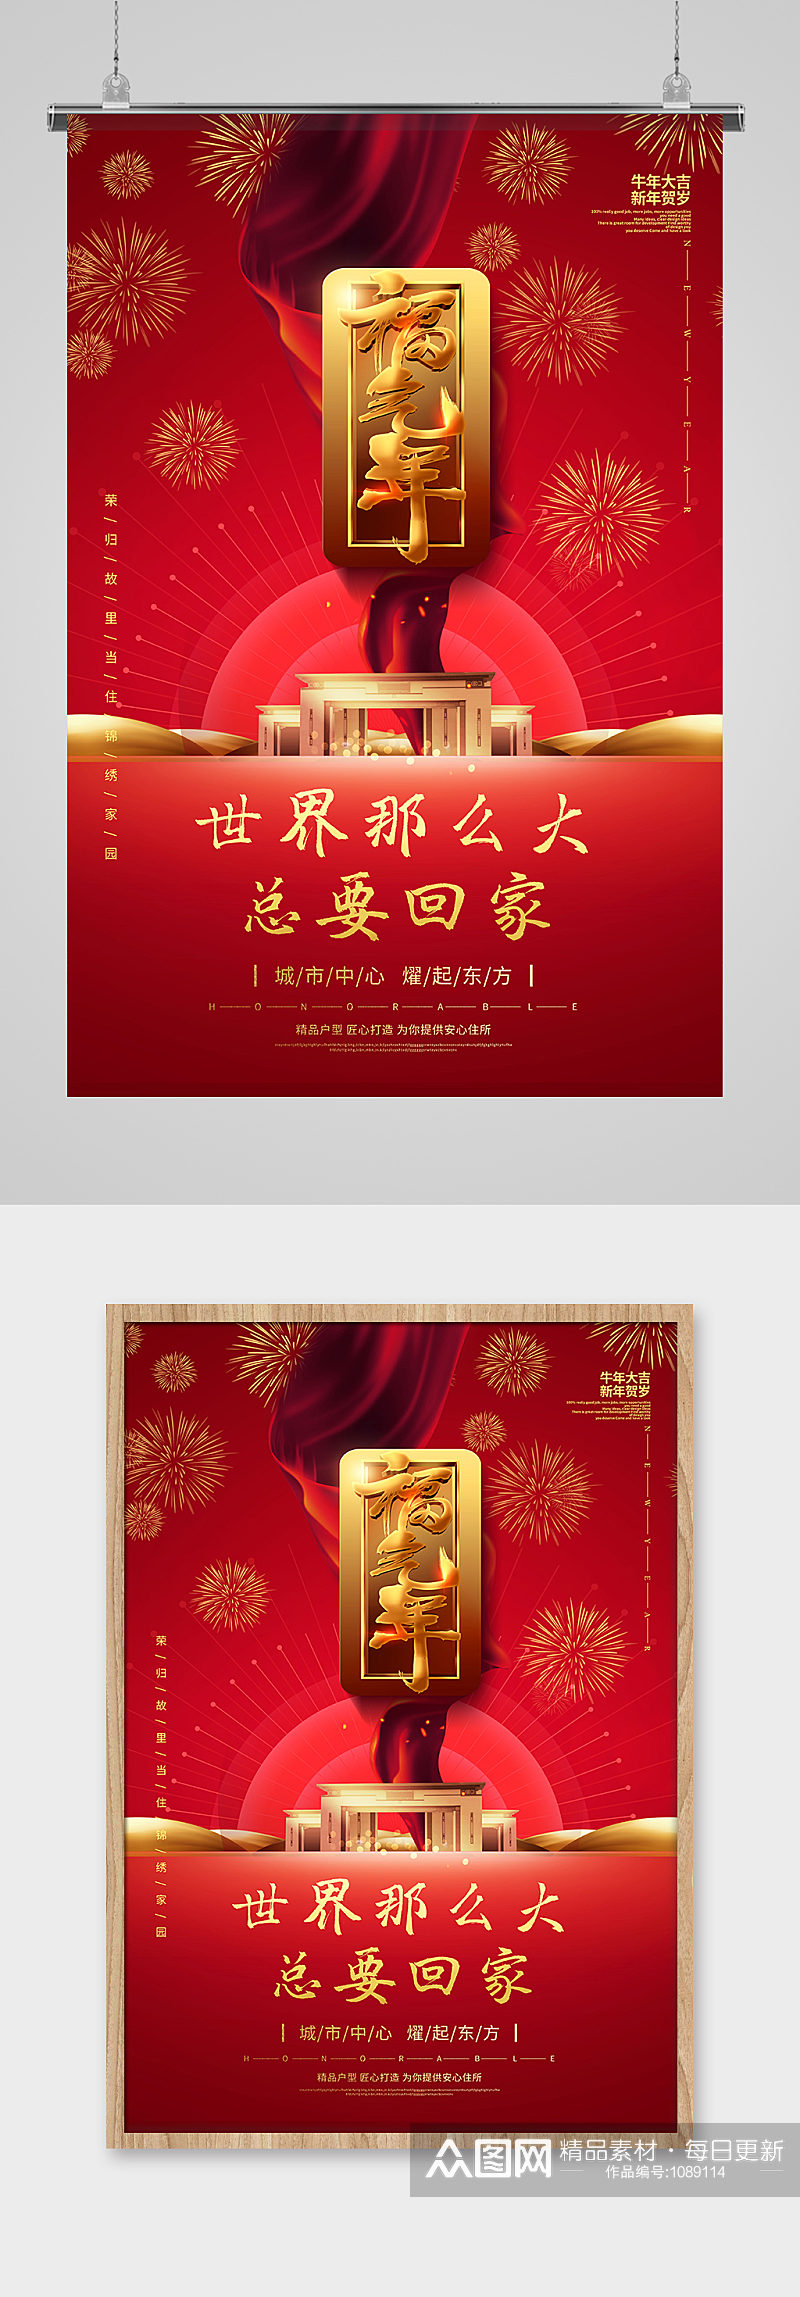 红色新年春节福气年回家置业地产行业海报 欢迎回家素材